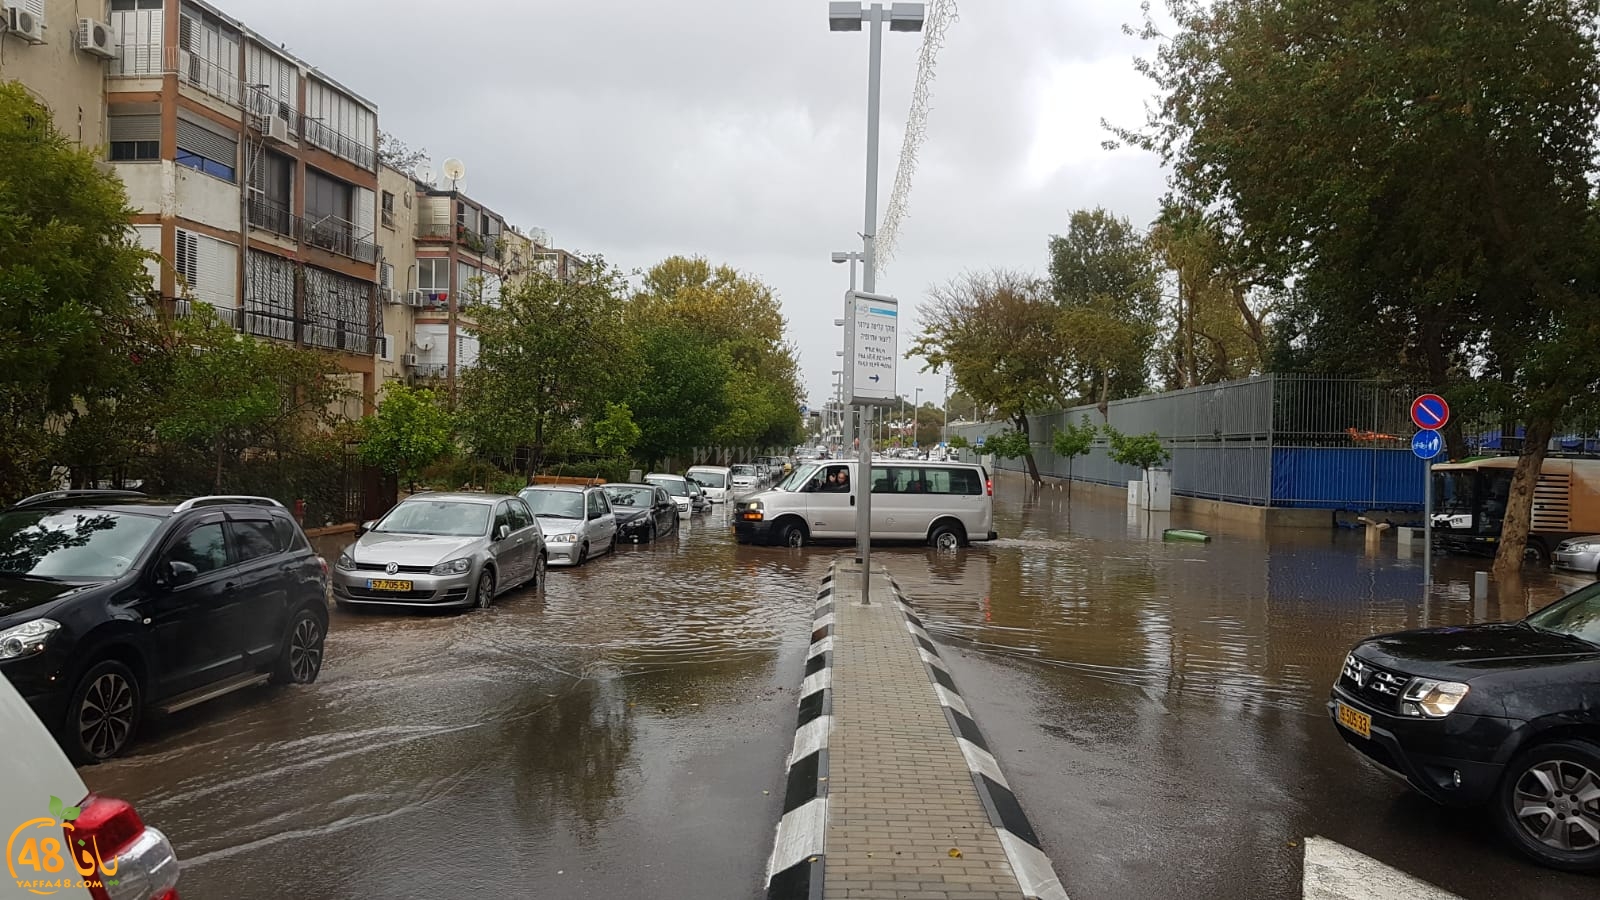 فيديو: شوارع يافا تغرق بسبب الأمطار والبلدية تُعلن حالة الطوارئ الدرجة الثالثة